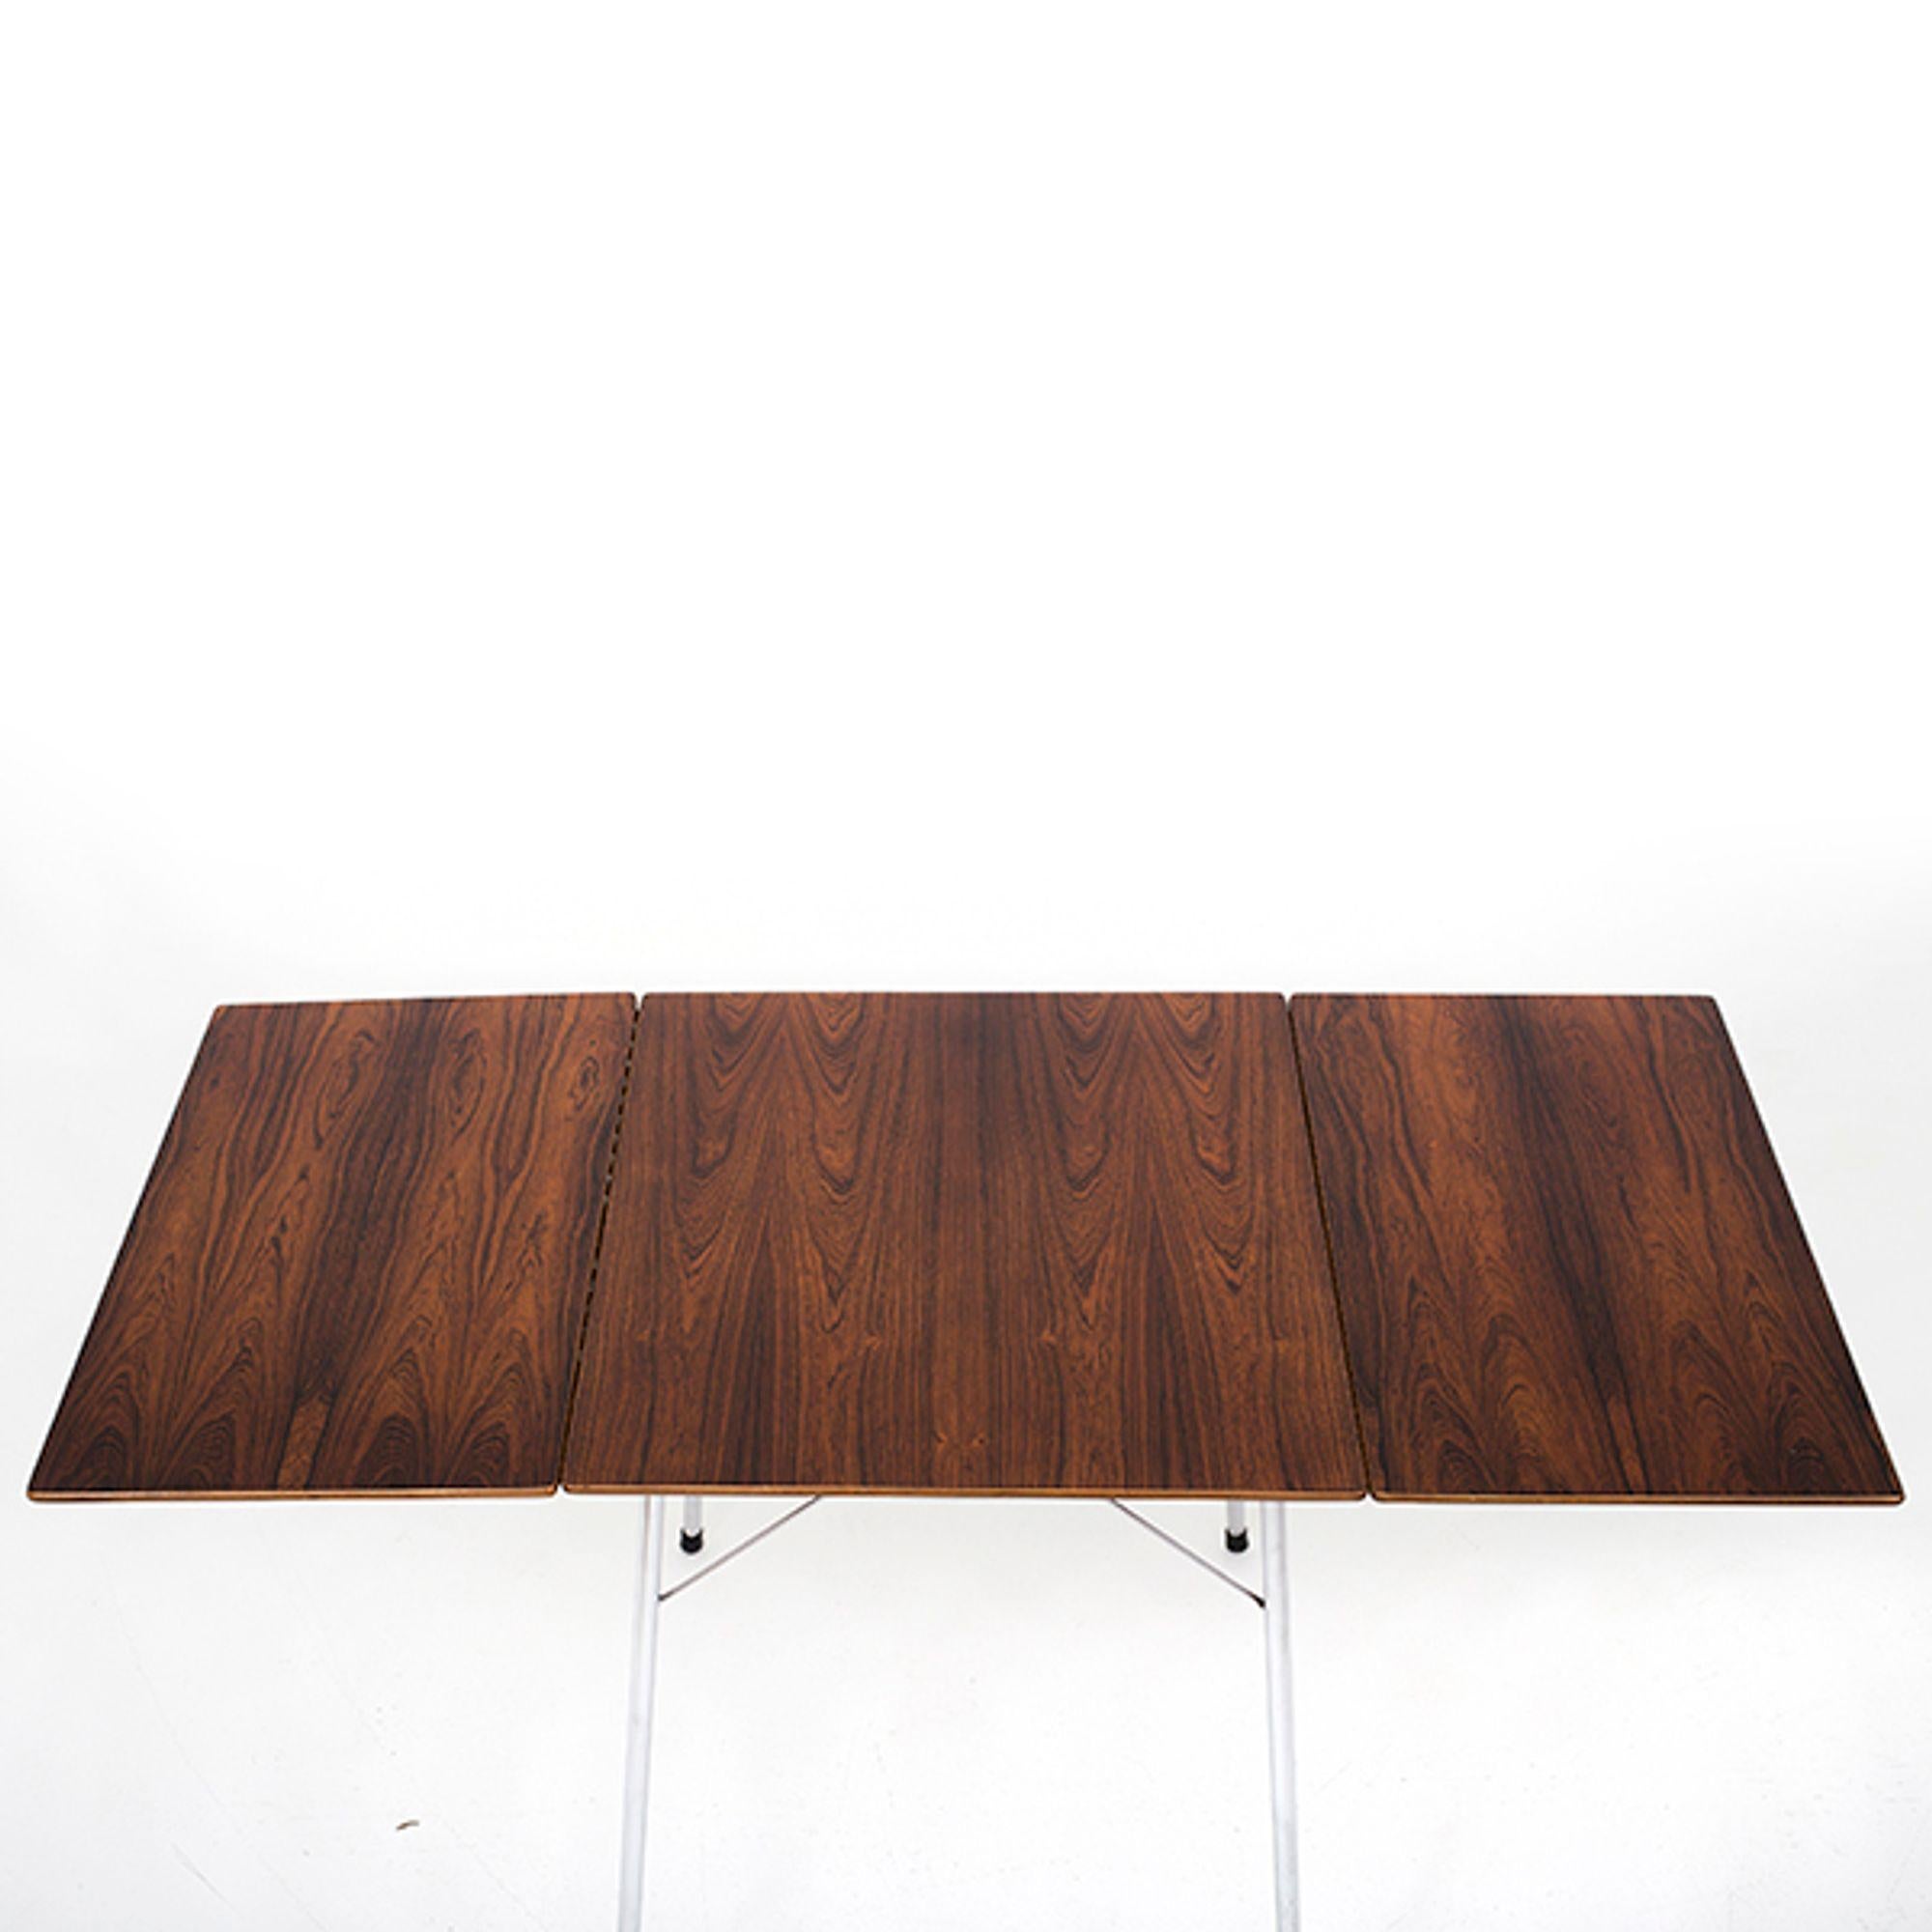 Drop-leaf table in rosewood. Designed in 1952. Additional length: 40.00cm per leaf. Arne Jacobsen / Fritz Hansen.